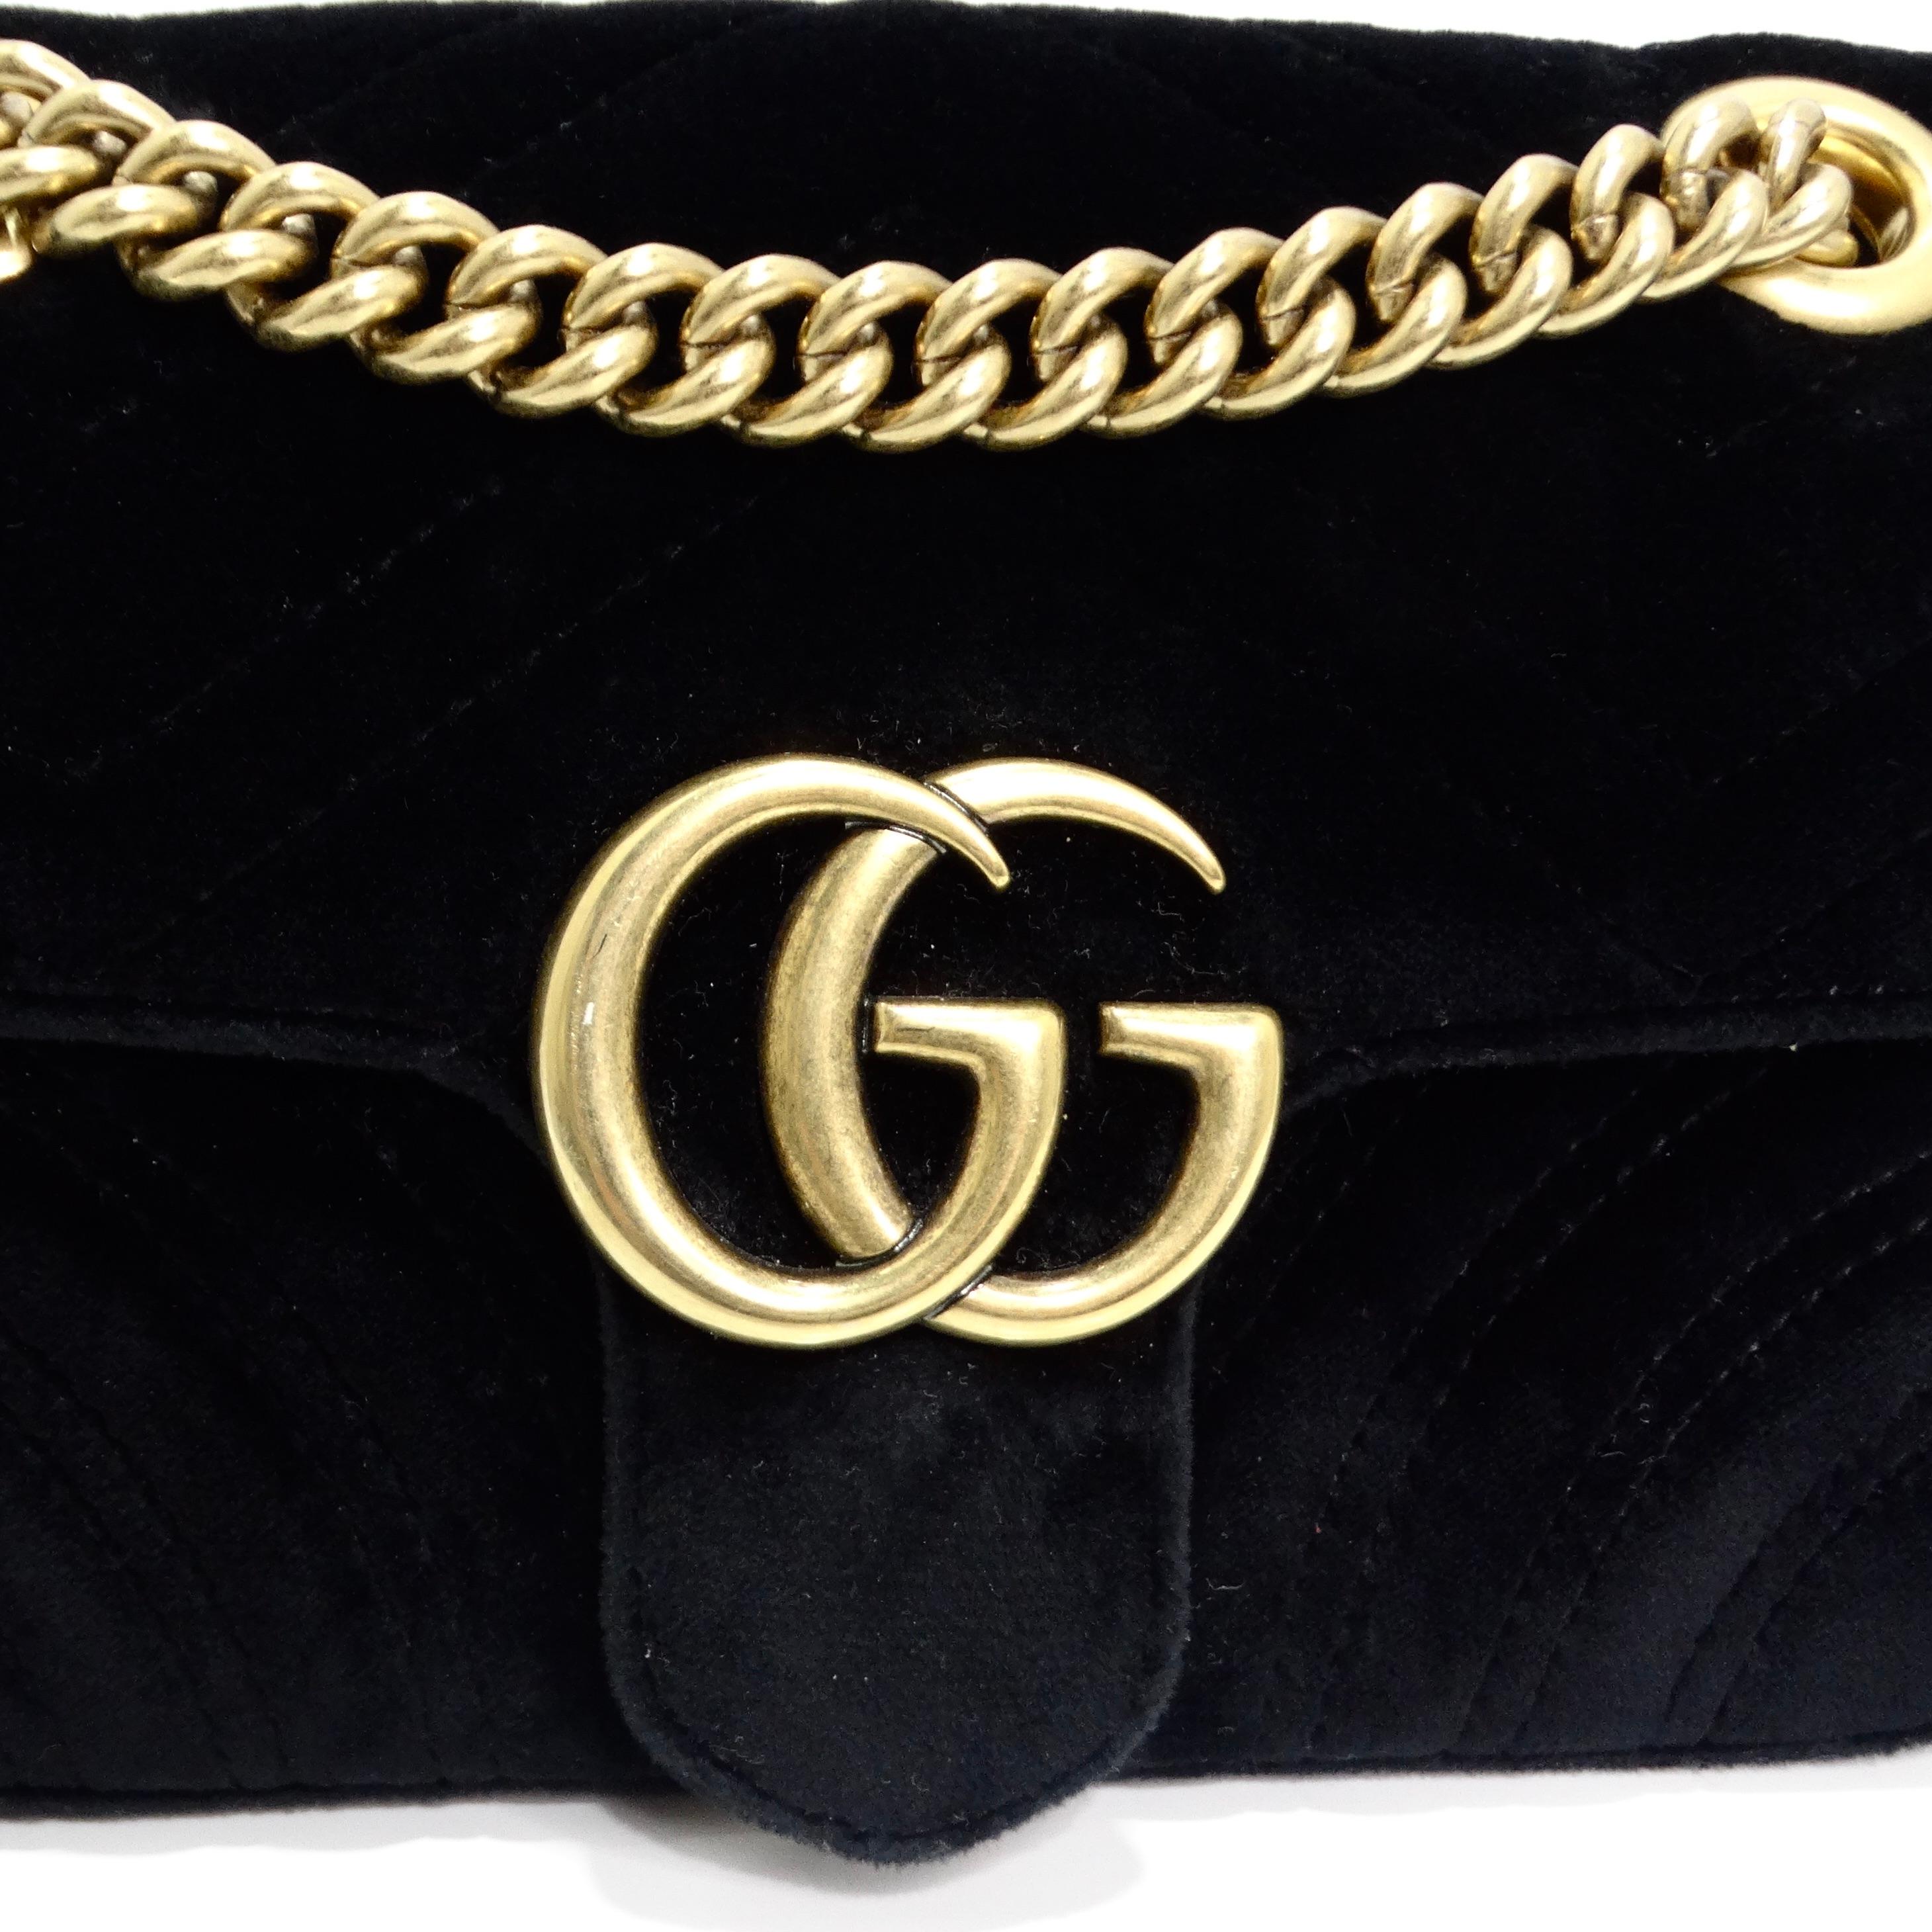 Die Gucci Velvet Matelasse Mini GG Marmont Shoulder Bag in Schwarz ist ein raffiniertes und luxuriöses Accessoire, das Eleganz mit modernem Flair verbindet. Die Tasche ist aus weichem, gestepptem Samt in einem zeitlosen Schwarz gefertigt und strahlt